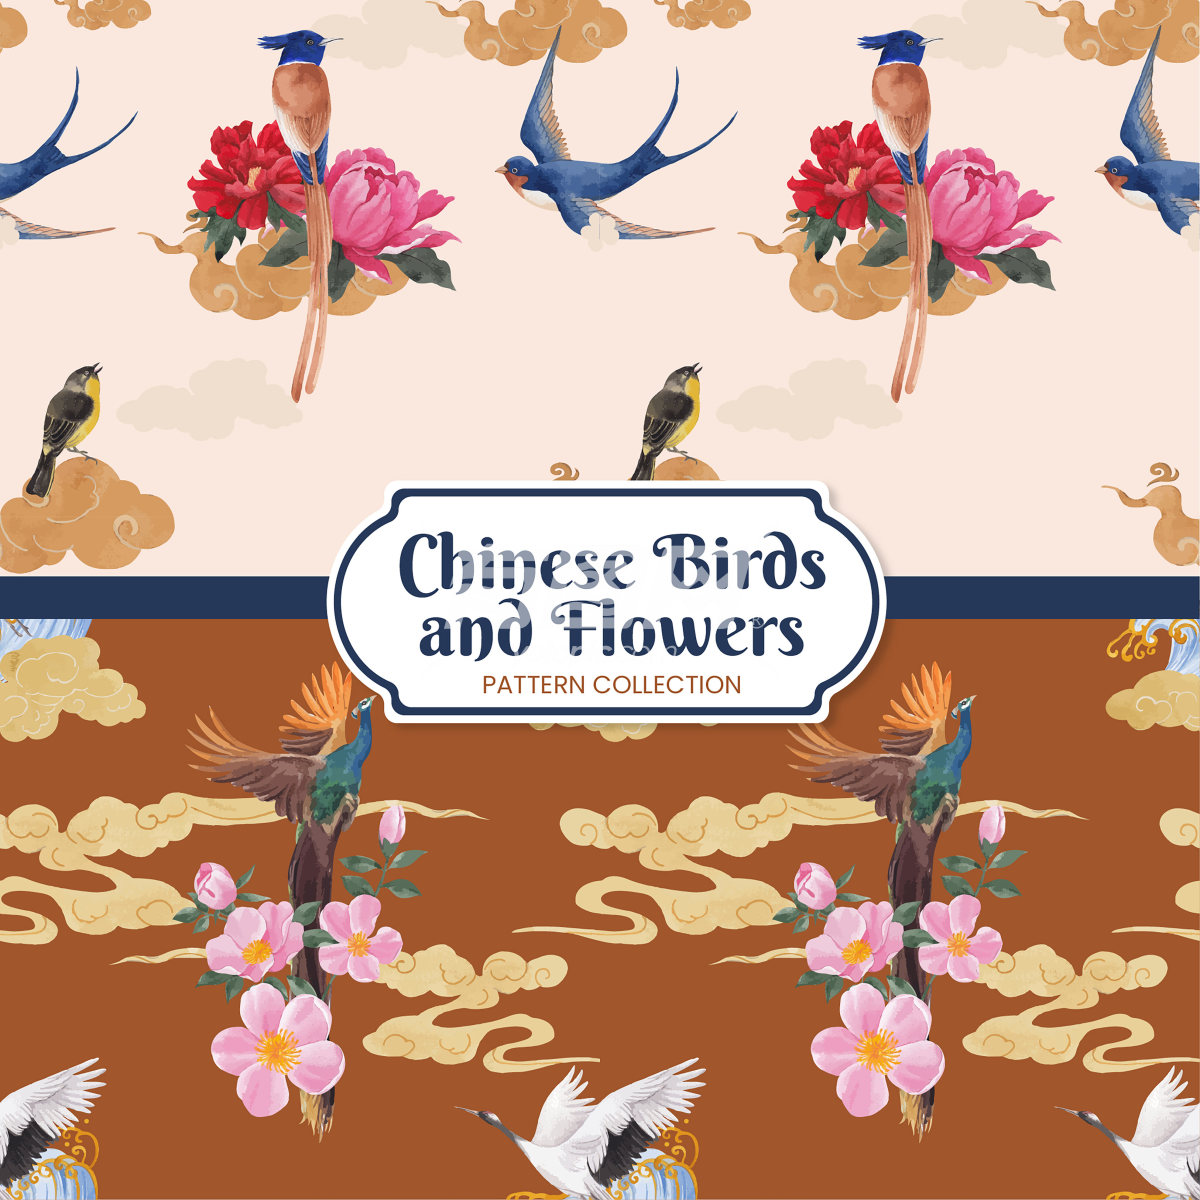 中国风格的鸟类和花卉图案